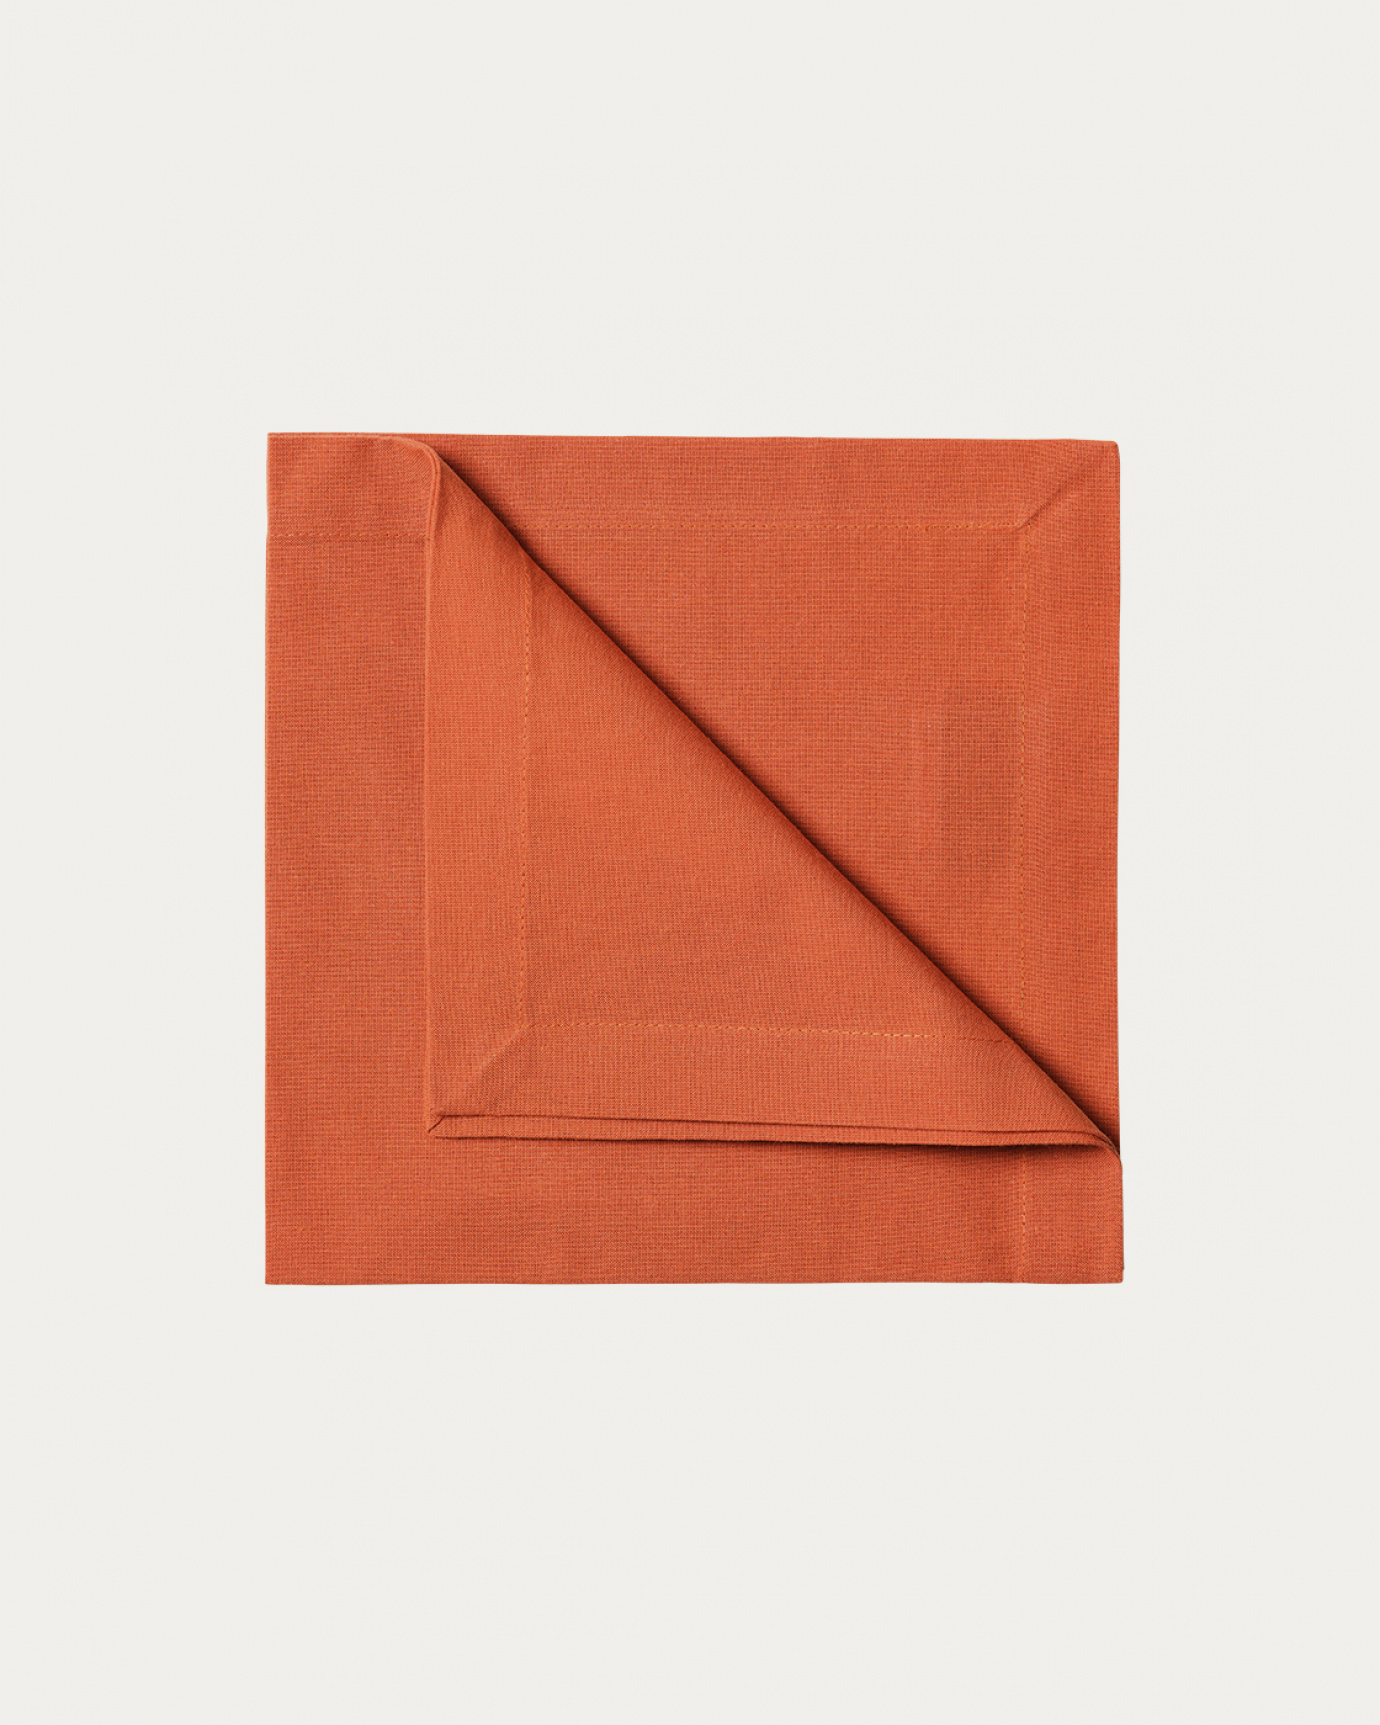 Produktbild rostorange ROBERT Serviette aus weicher Baumwolle von LINUM DESIGN. Größe 45x45 cm und in 4er-Pack verkauft.